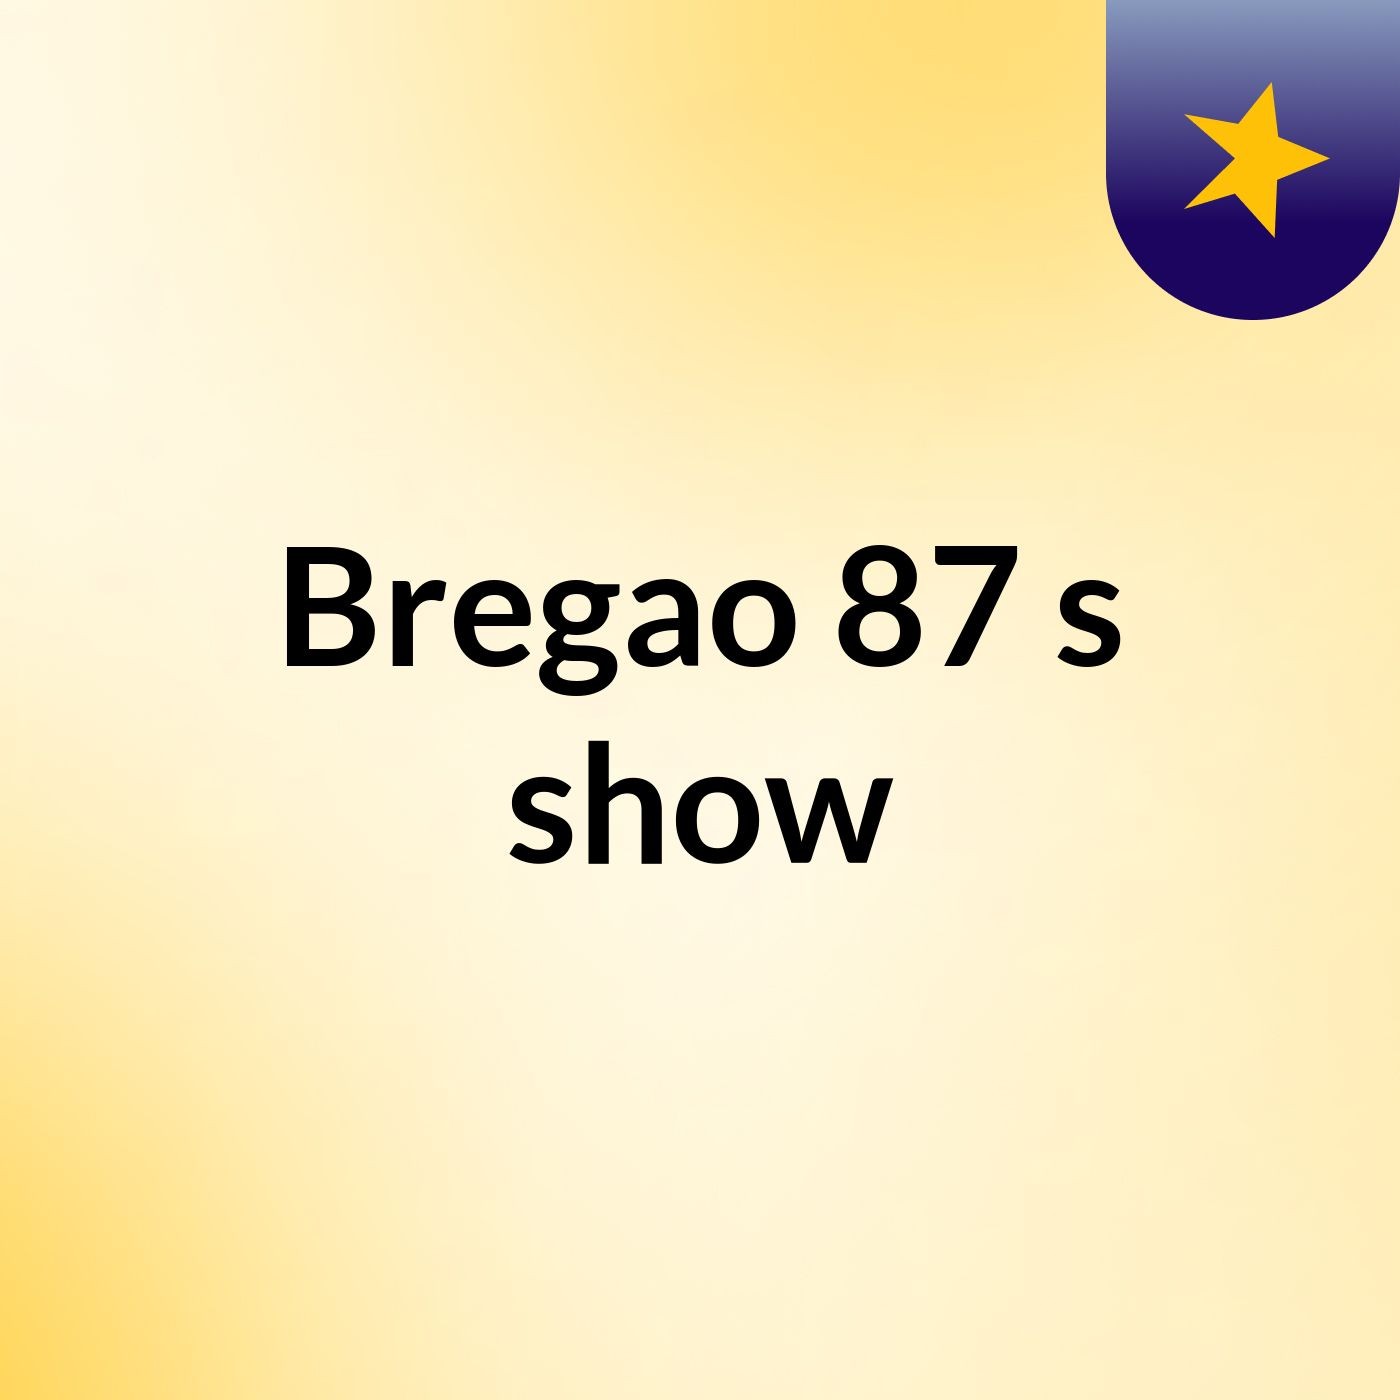 Bregao 87's show